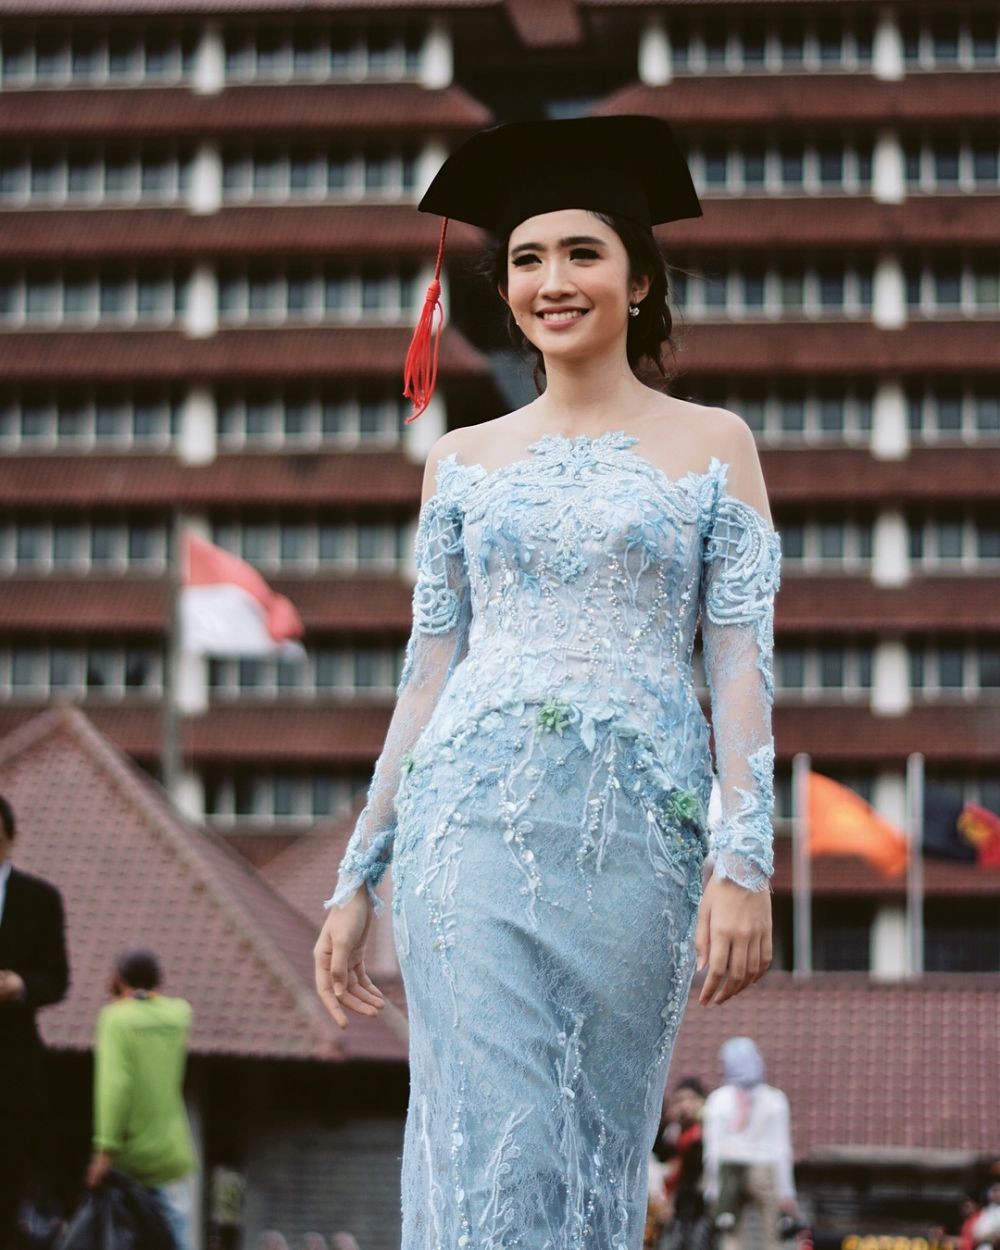 10 Model Kebaya Modern Elegan Terbaru 2019 Bisa Buat Wisuda